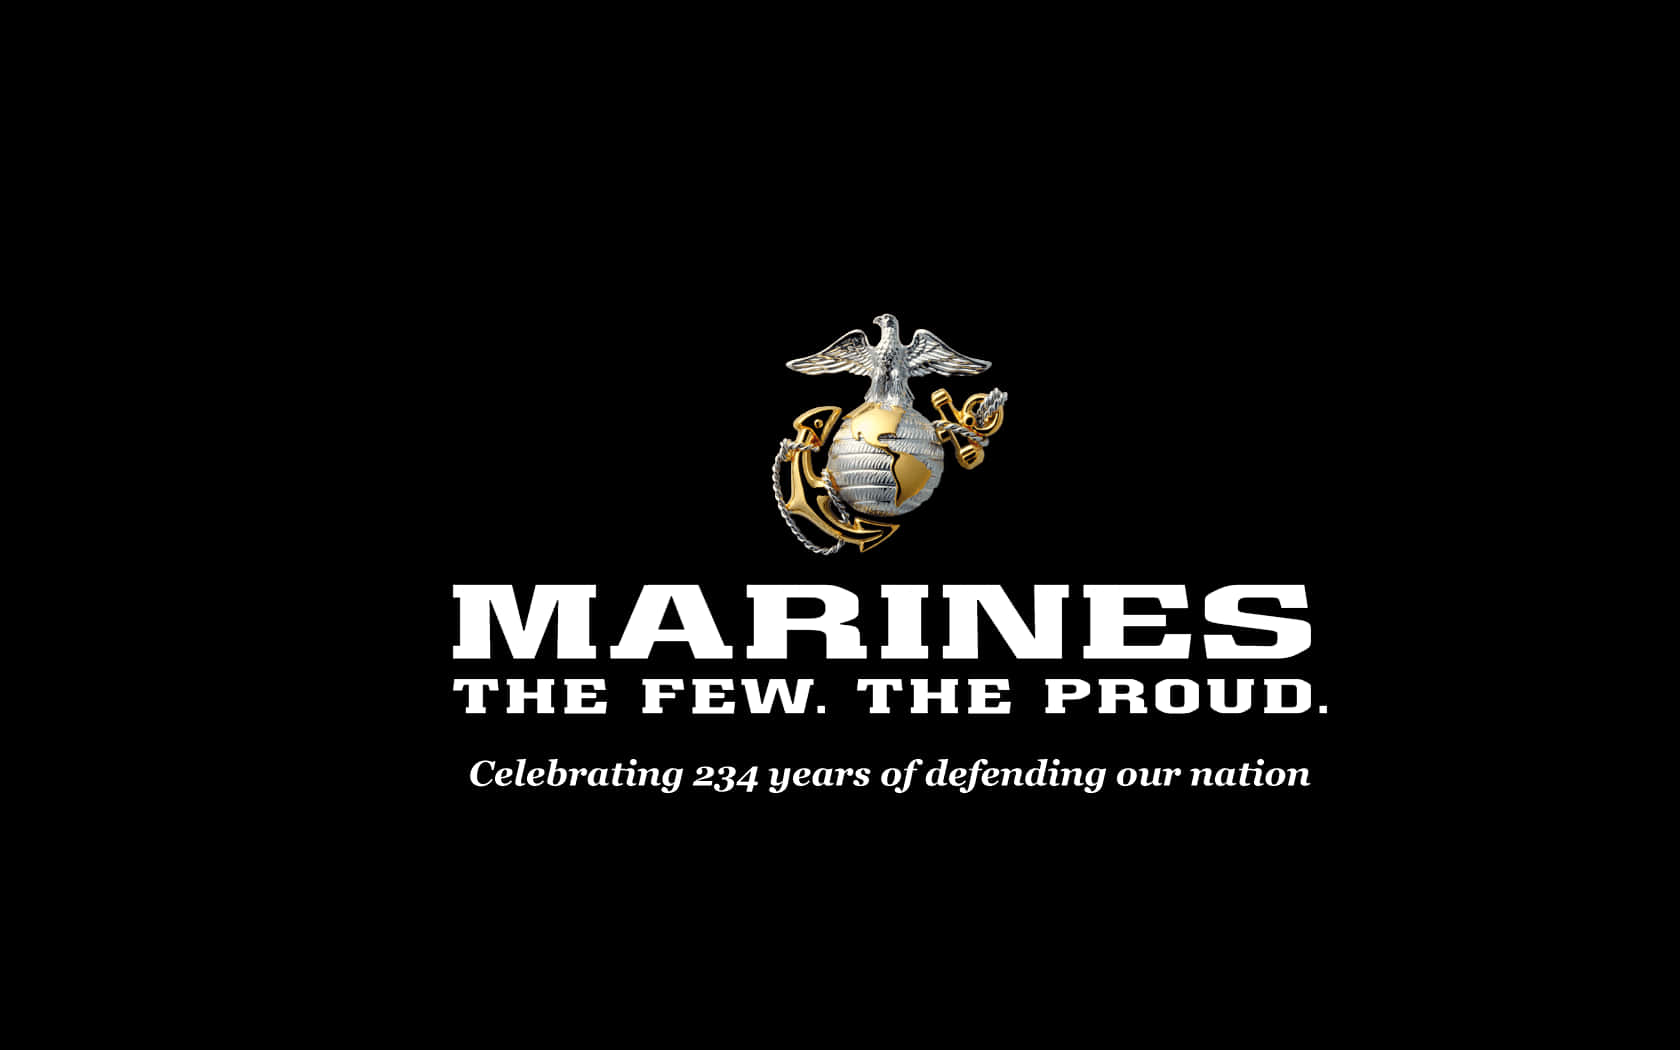 Emblemadel Cuerpo De Marines De Estados Unidos. Fondo de pantalla